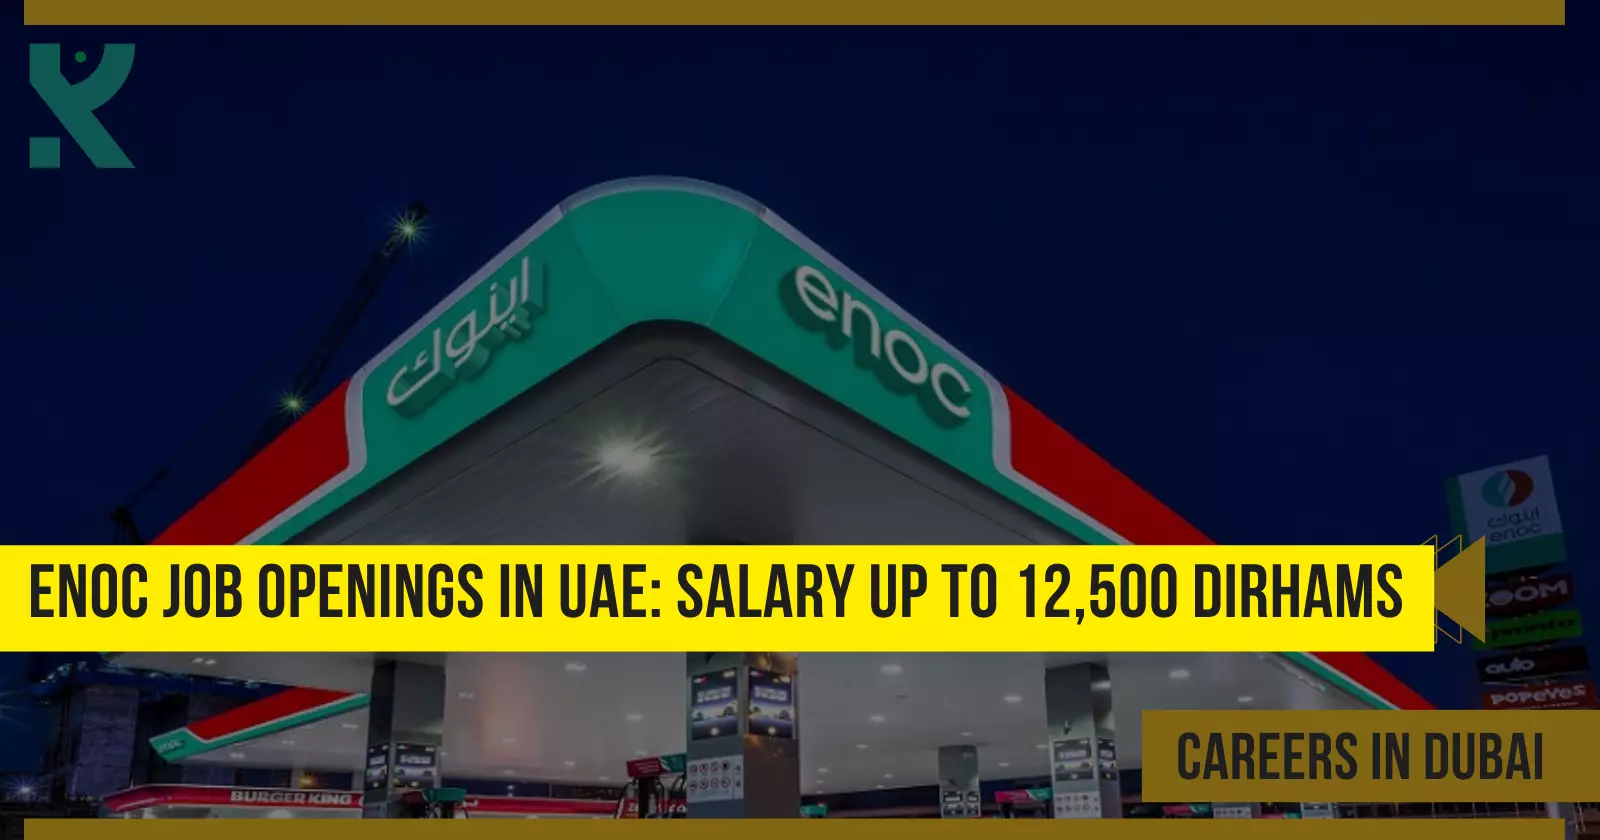 ENOC Job Openings in UAE Salary up to 12,500 Dirhams